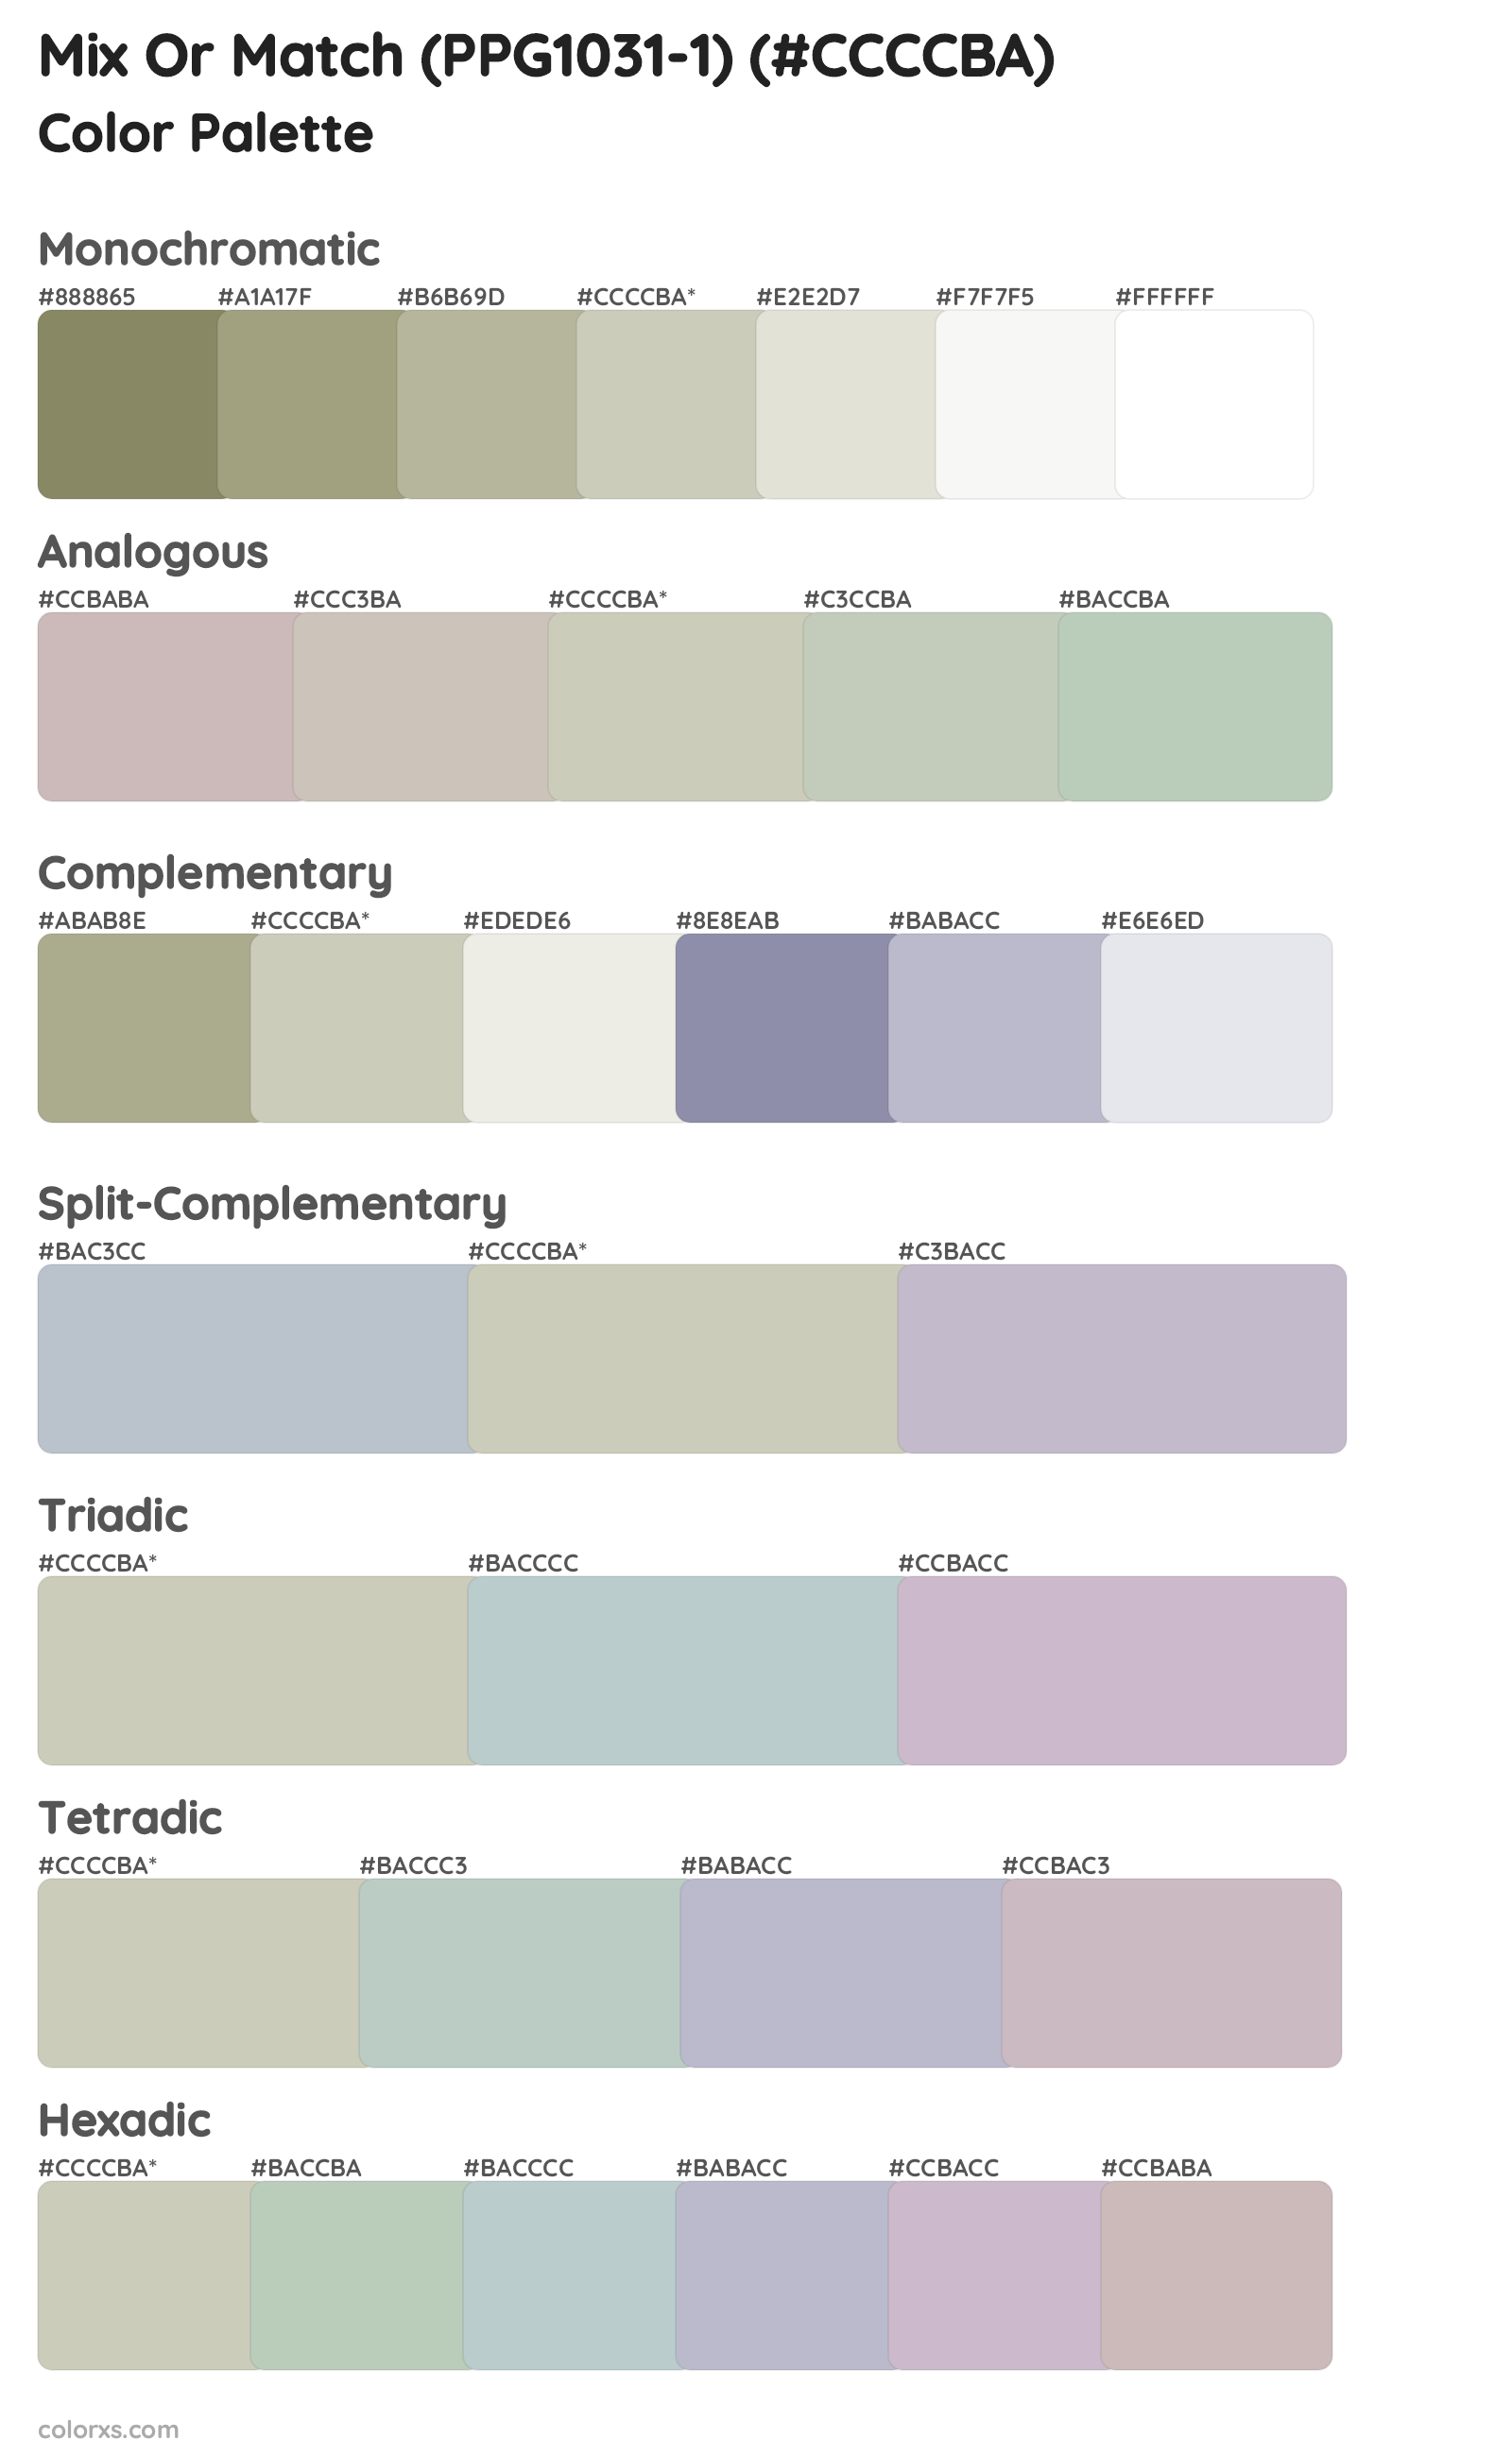 Mix Or Match (PPG1031-1) Color Scheme Palettes